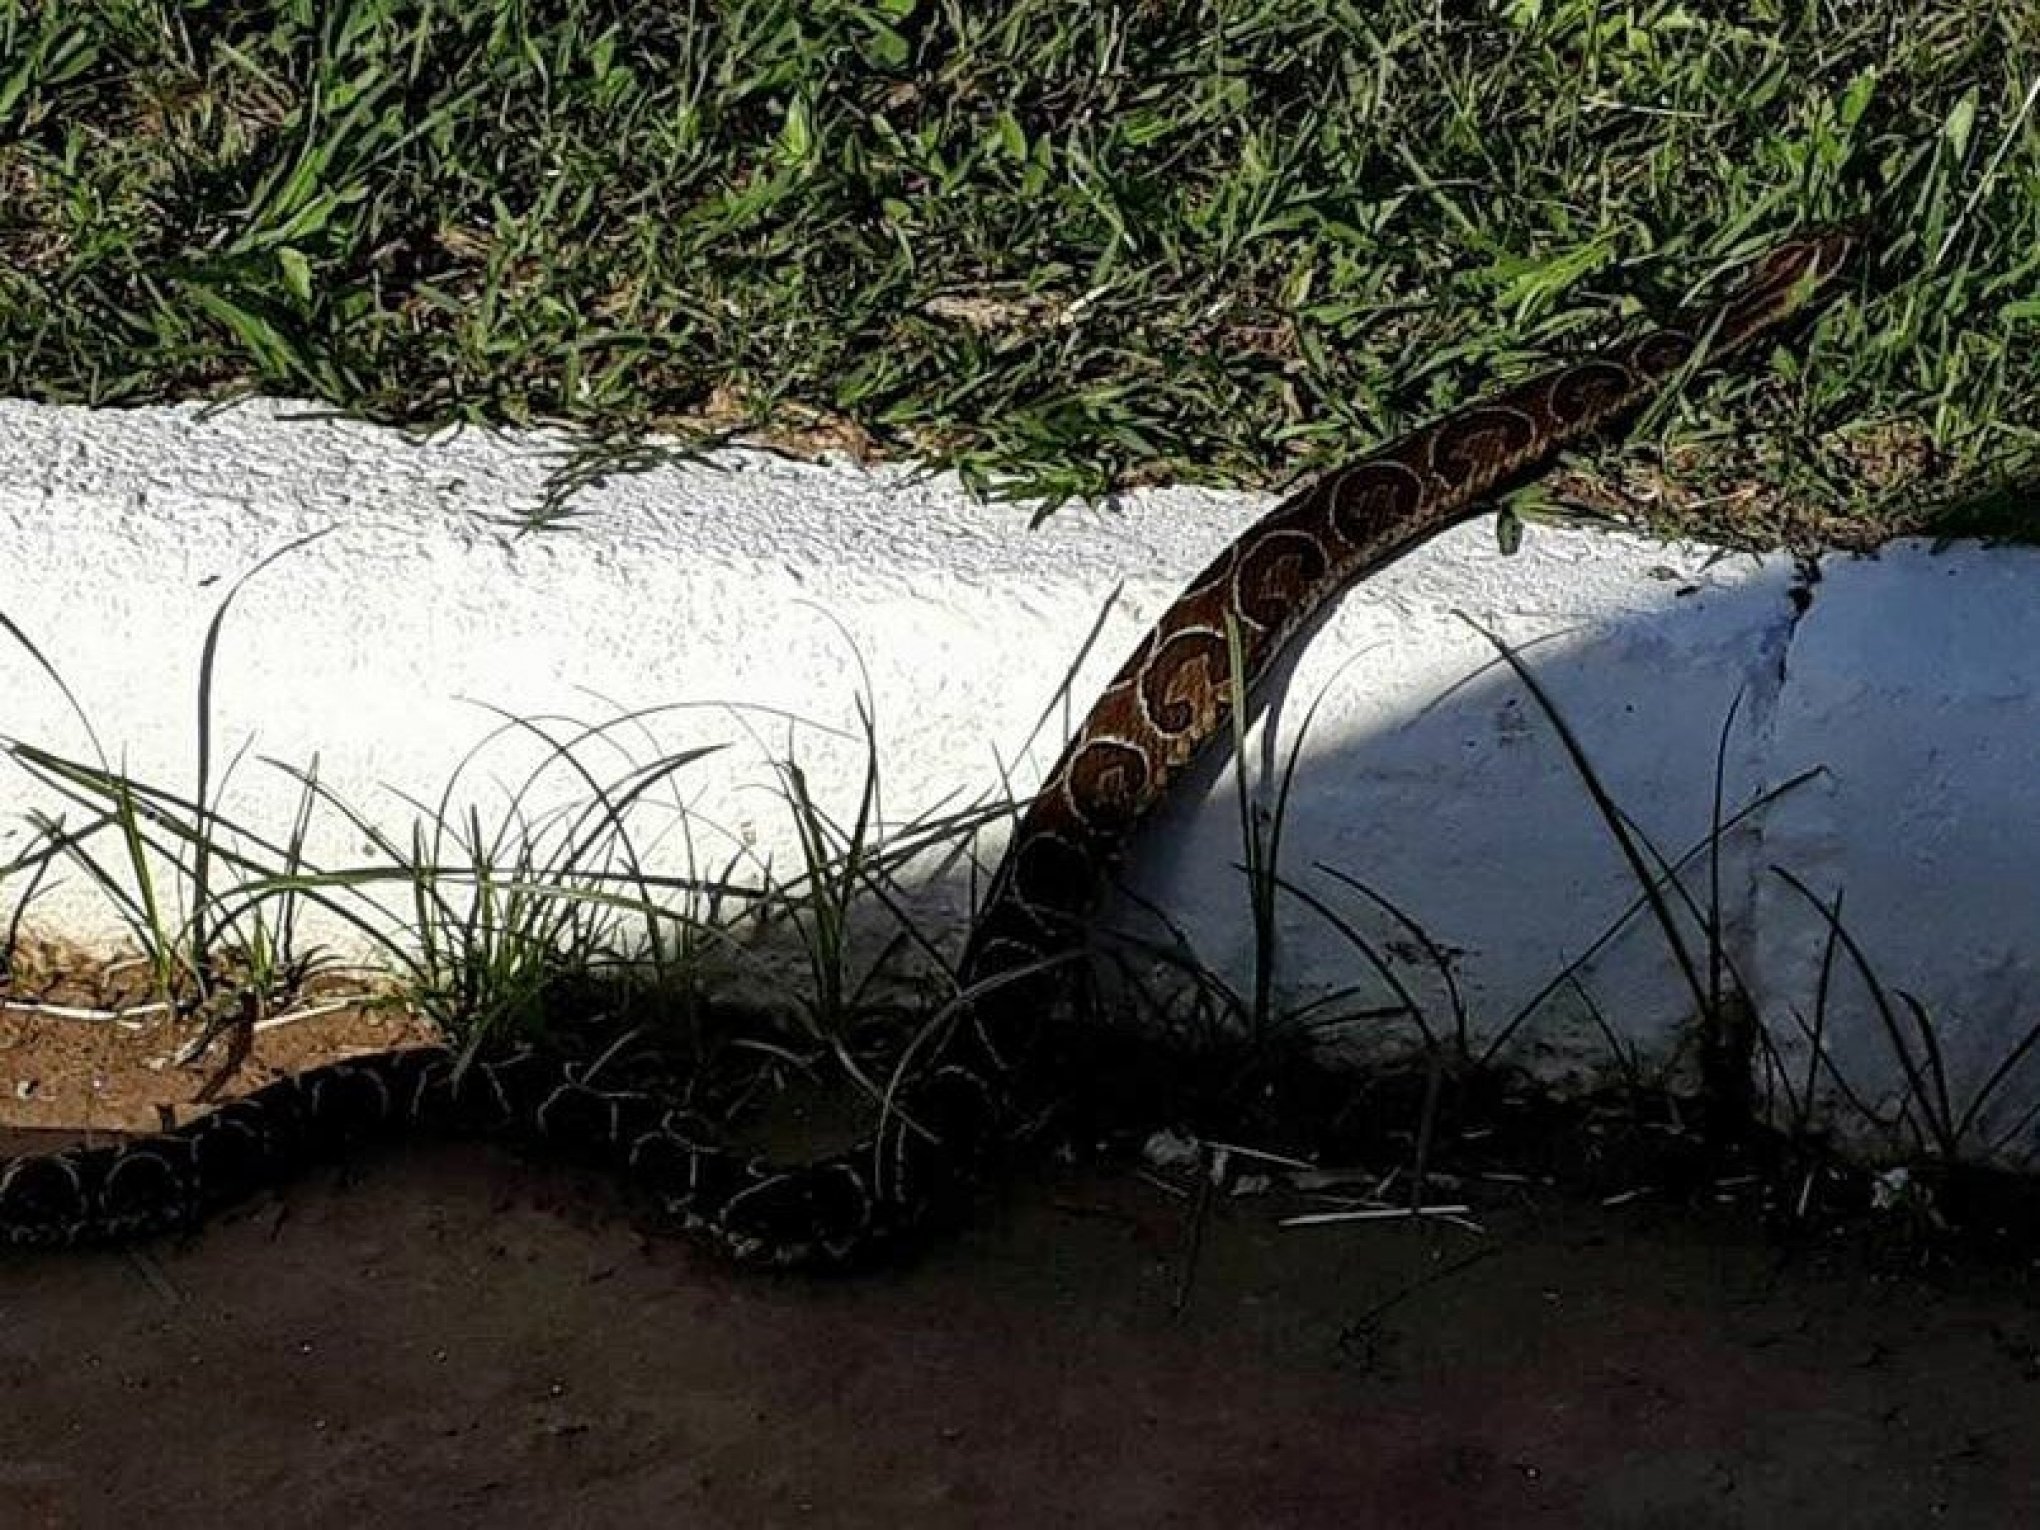 Cobra é capturada no gramado antes de jogo do Cruzeiro em Cachoeirinha -  Cachoeirinha - Correio de Gravataí